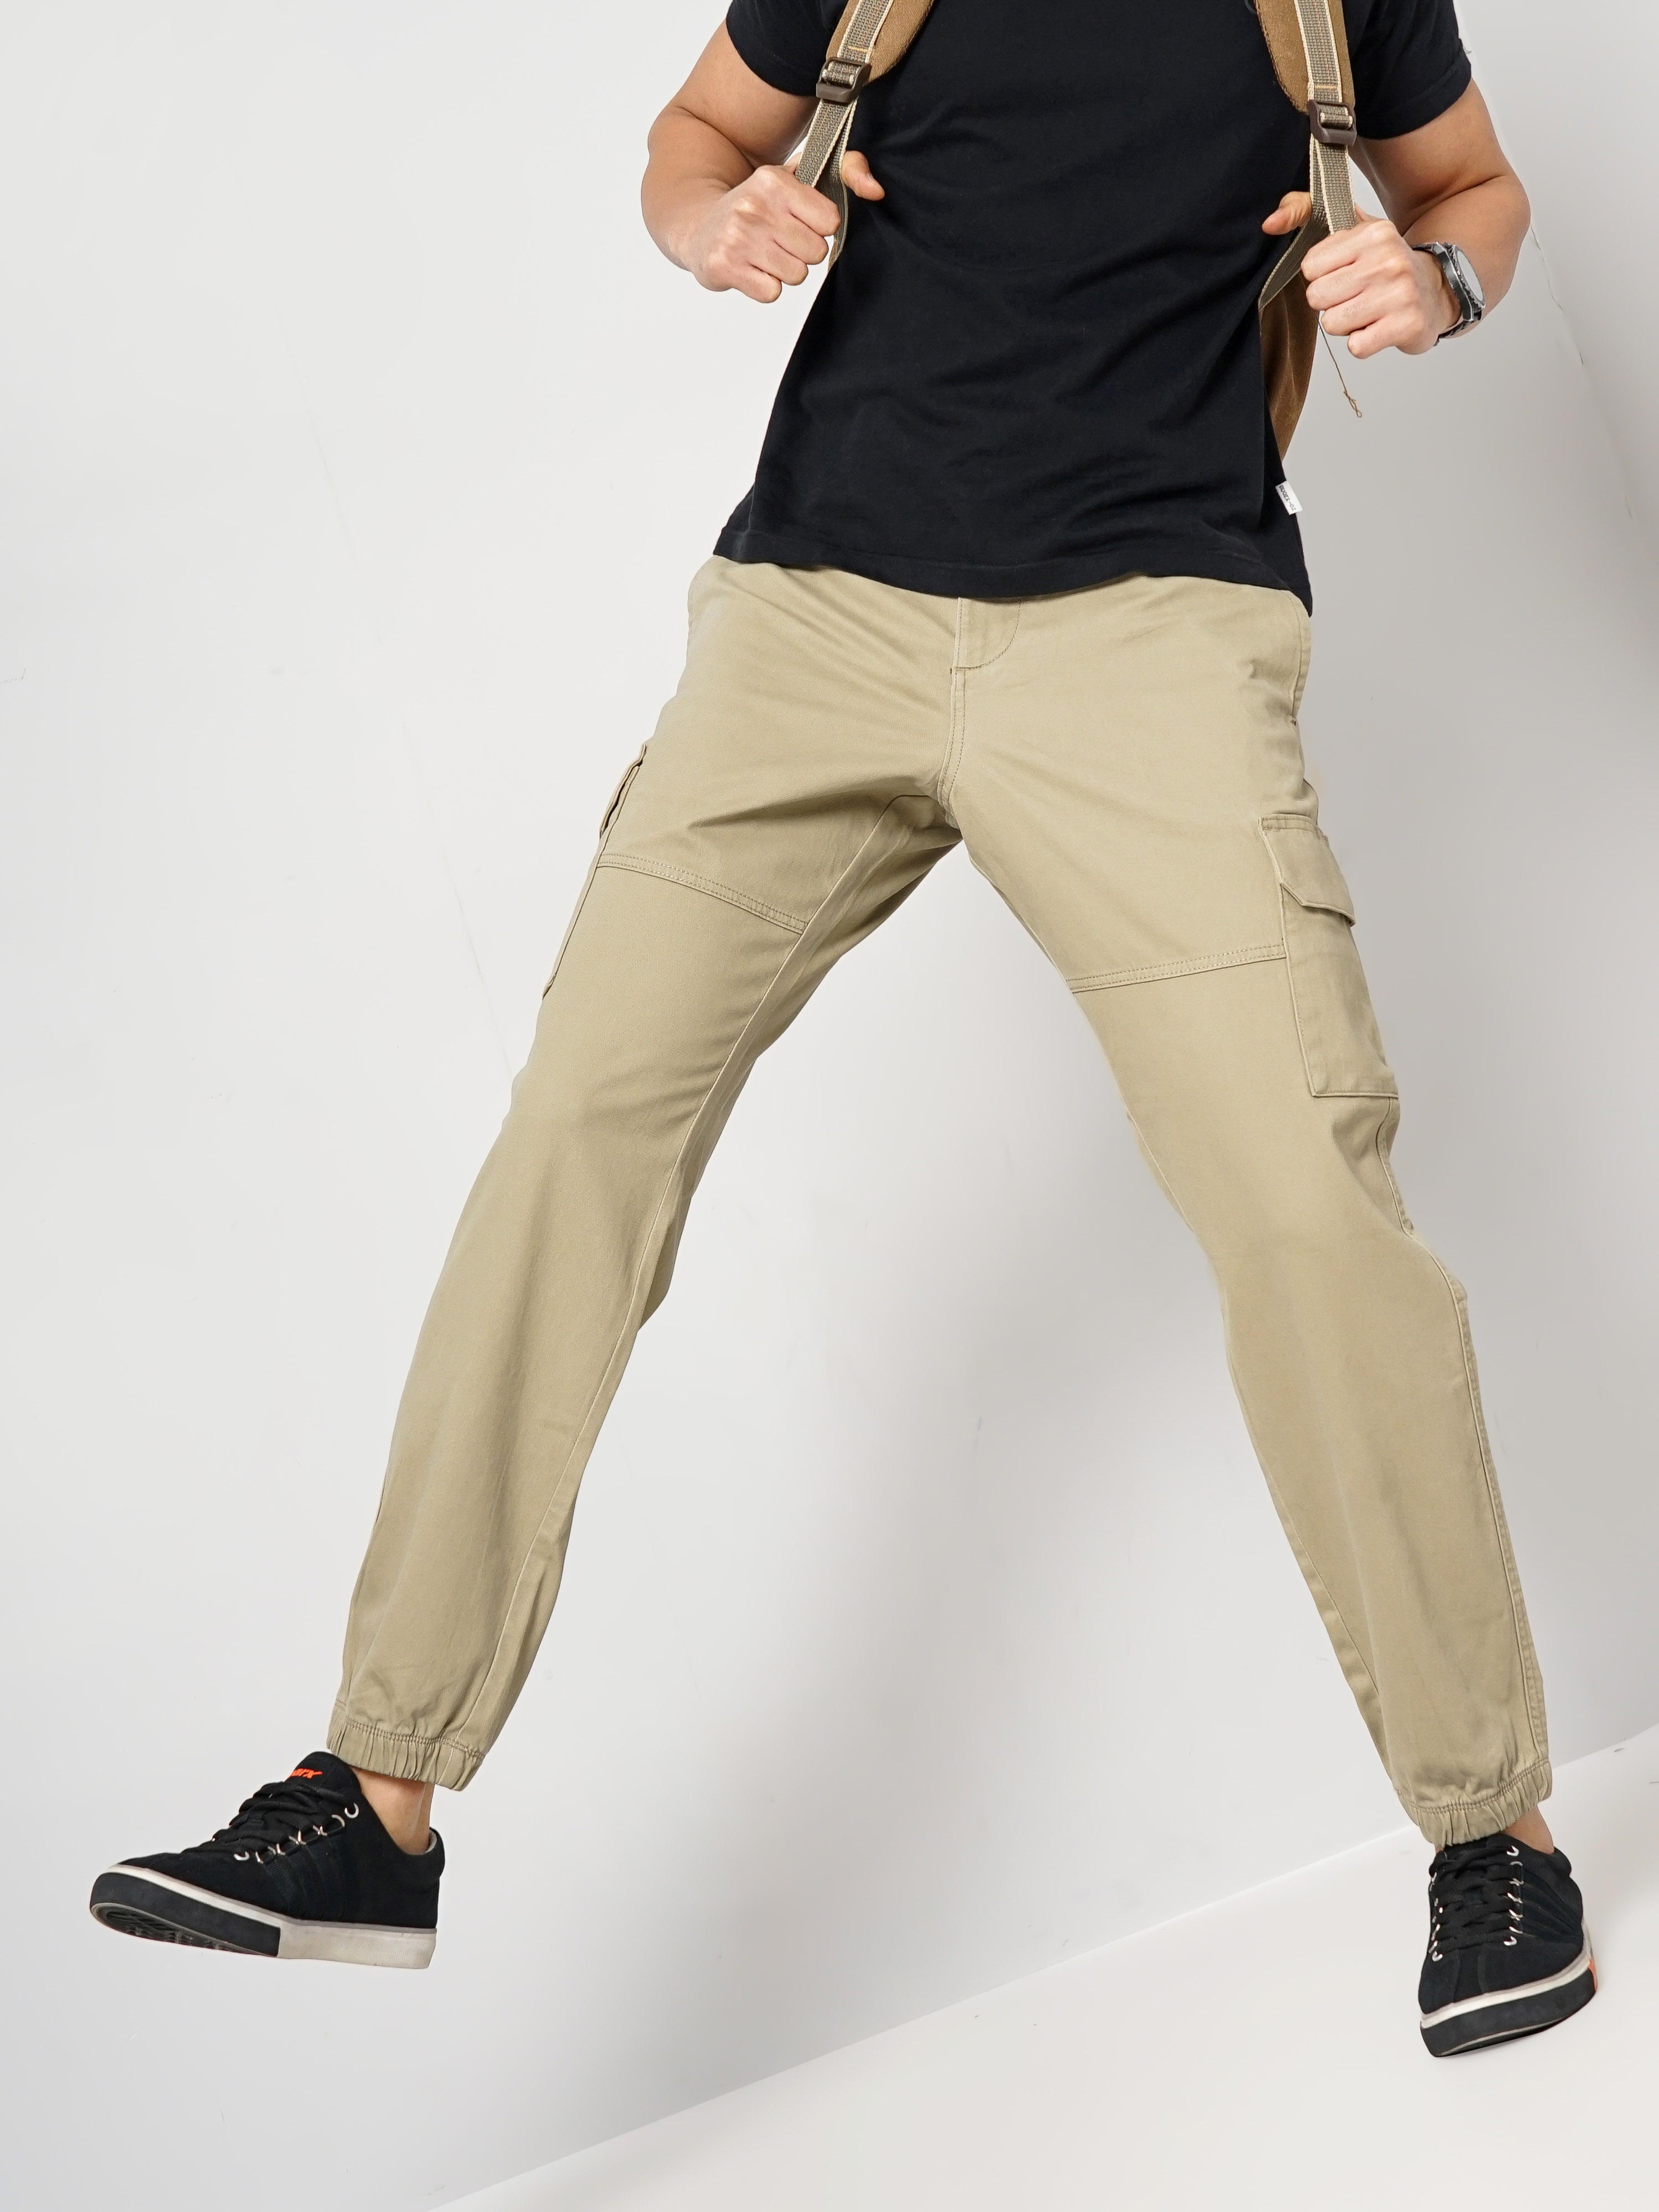 Buy STUDIO NEXX Men's Straight Fit Dark Olive Cotton Cargo Trouser -  CT01_DARKOLIVE_30 at Amazon.in